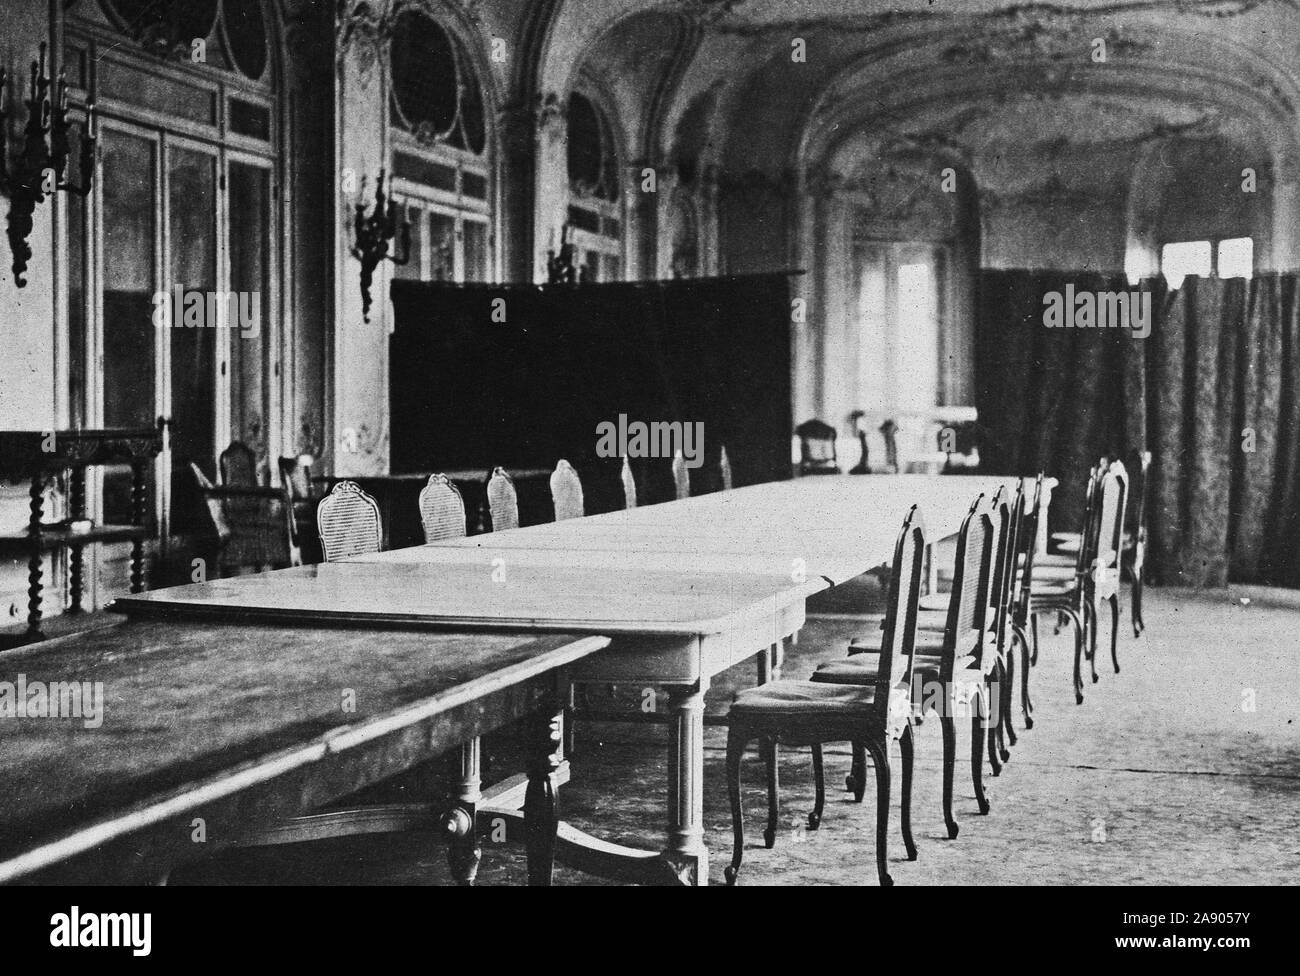 La pièce dans laquelle l'Armistice a eu lieu. Le prix dans le Grand Hôtel Britannique à Spa, Belgique, où les termes de l'armistice ont été discutés avec les délégués allemands Banque D'Images